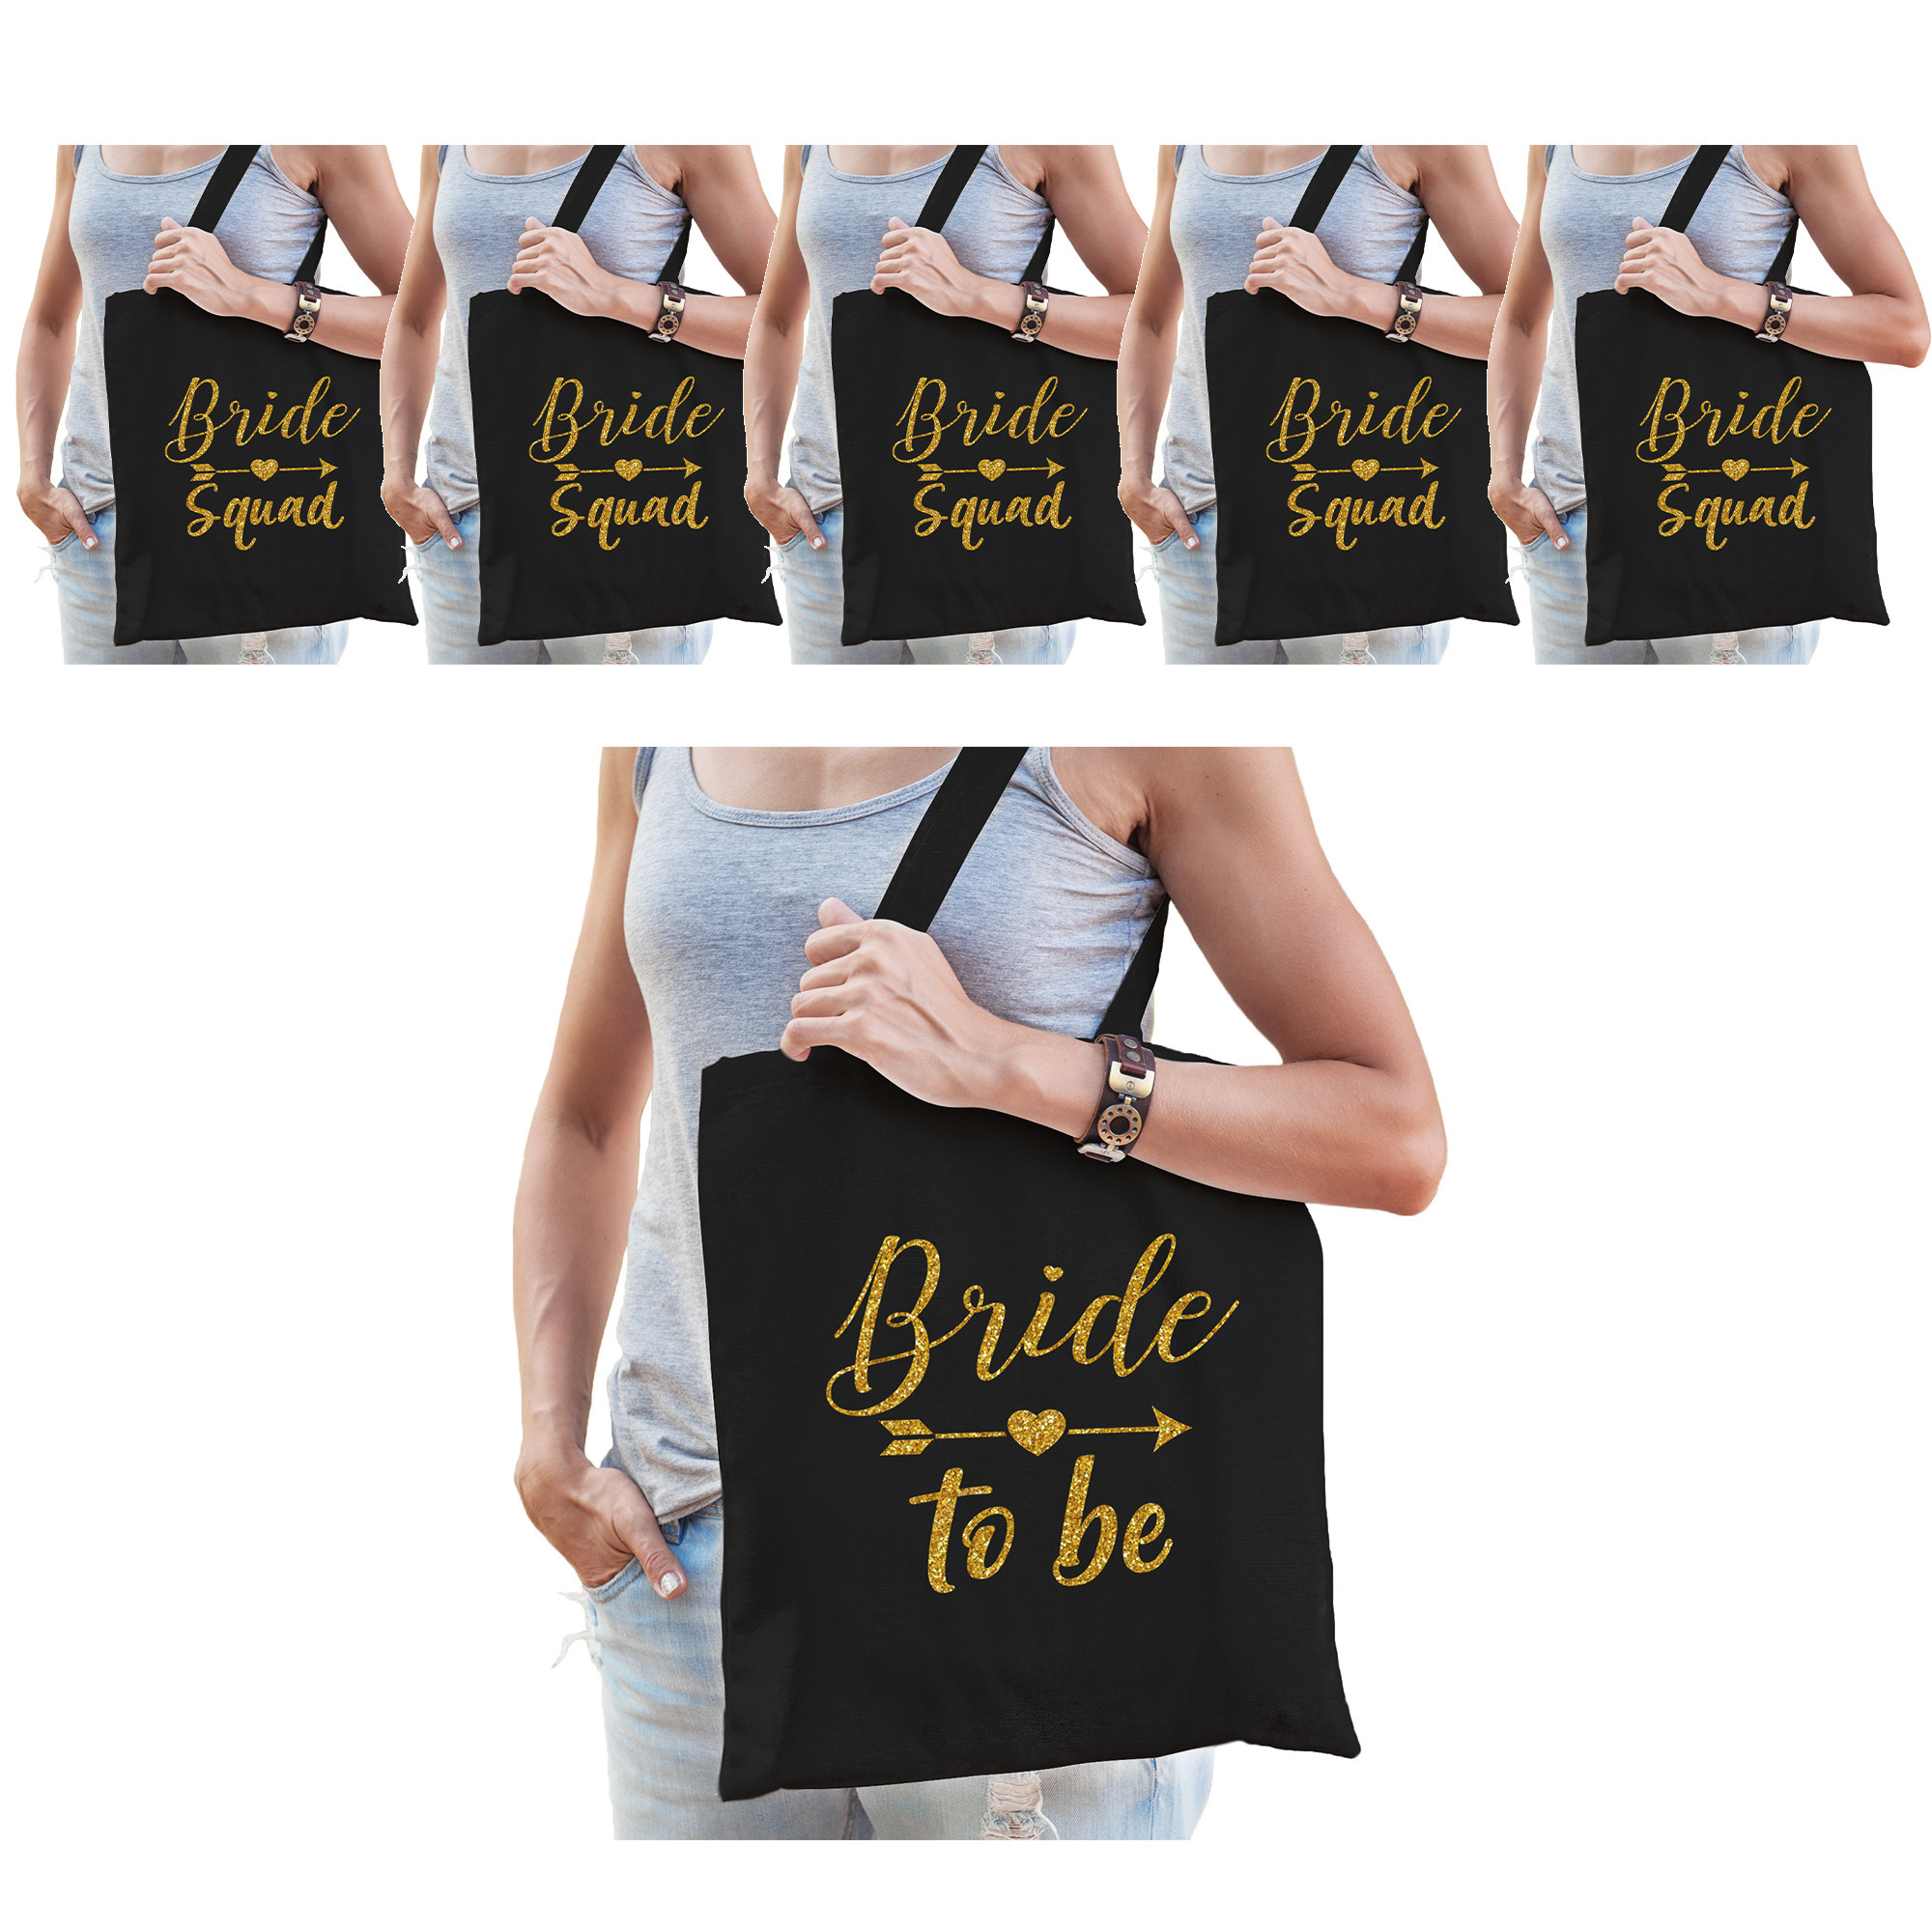 Vrijgezellenfeest dames tasjes/ goodiebag pakket: 1x Bride to Be zwart goud+ 9x Bride Squad zwart go